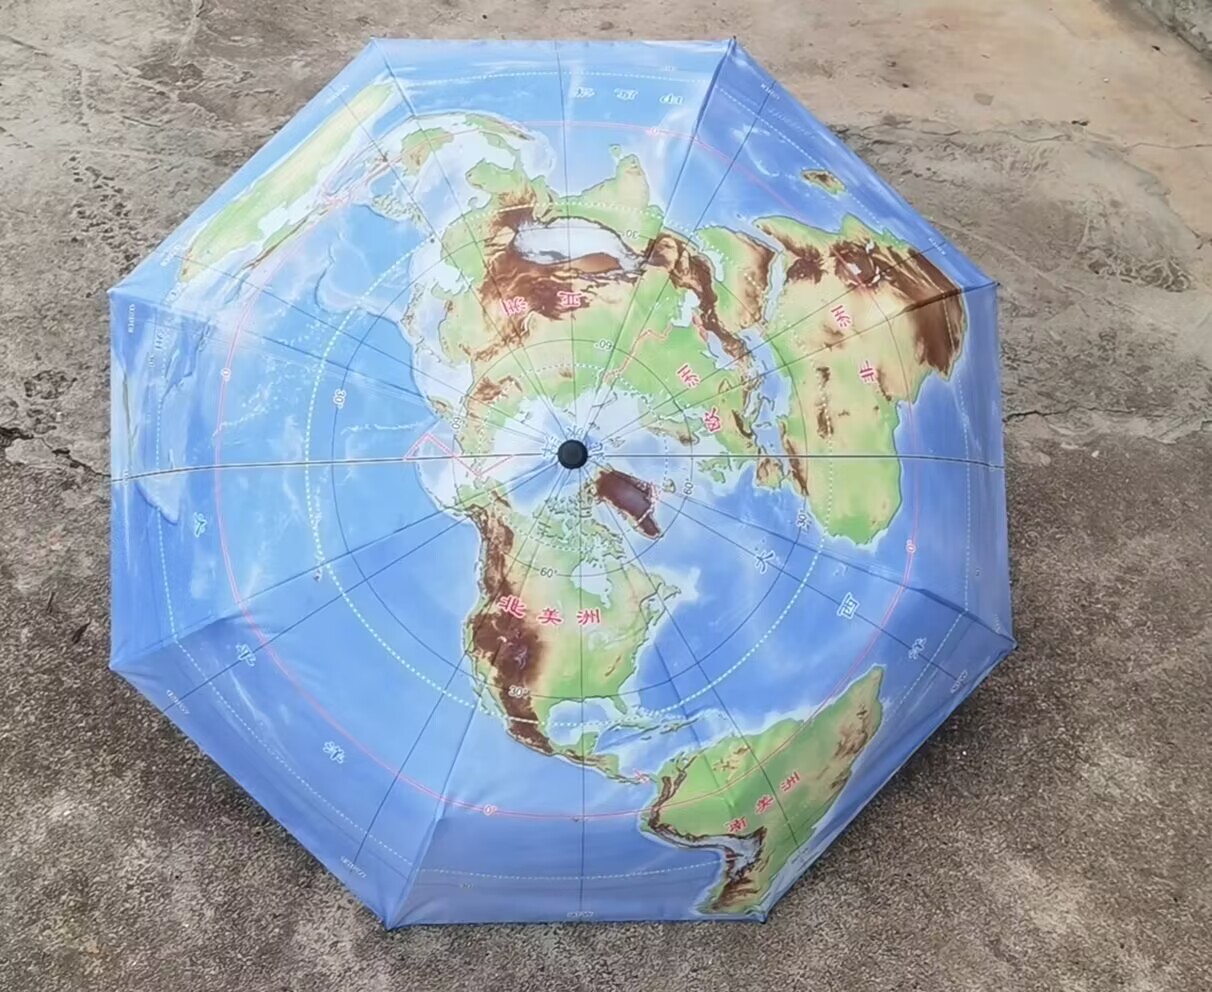 正品地图伞三折叠晴雨伞展示别致北极为中心50°S以北海陆雨季